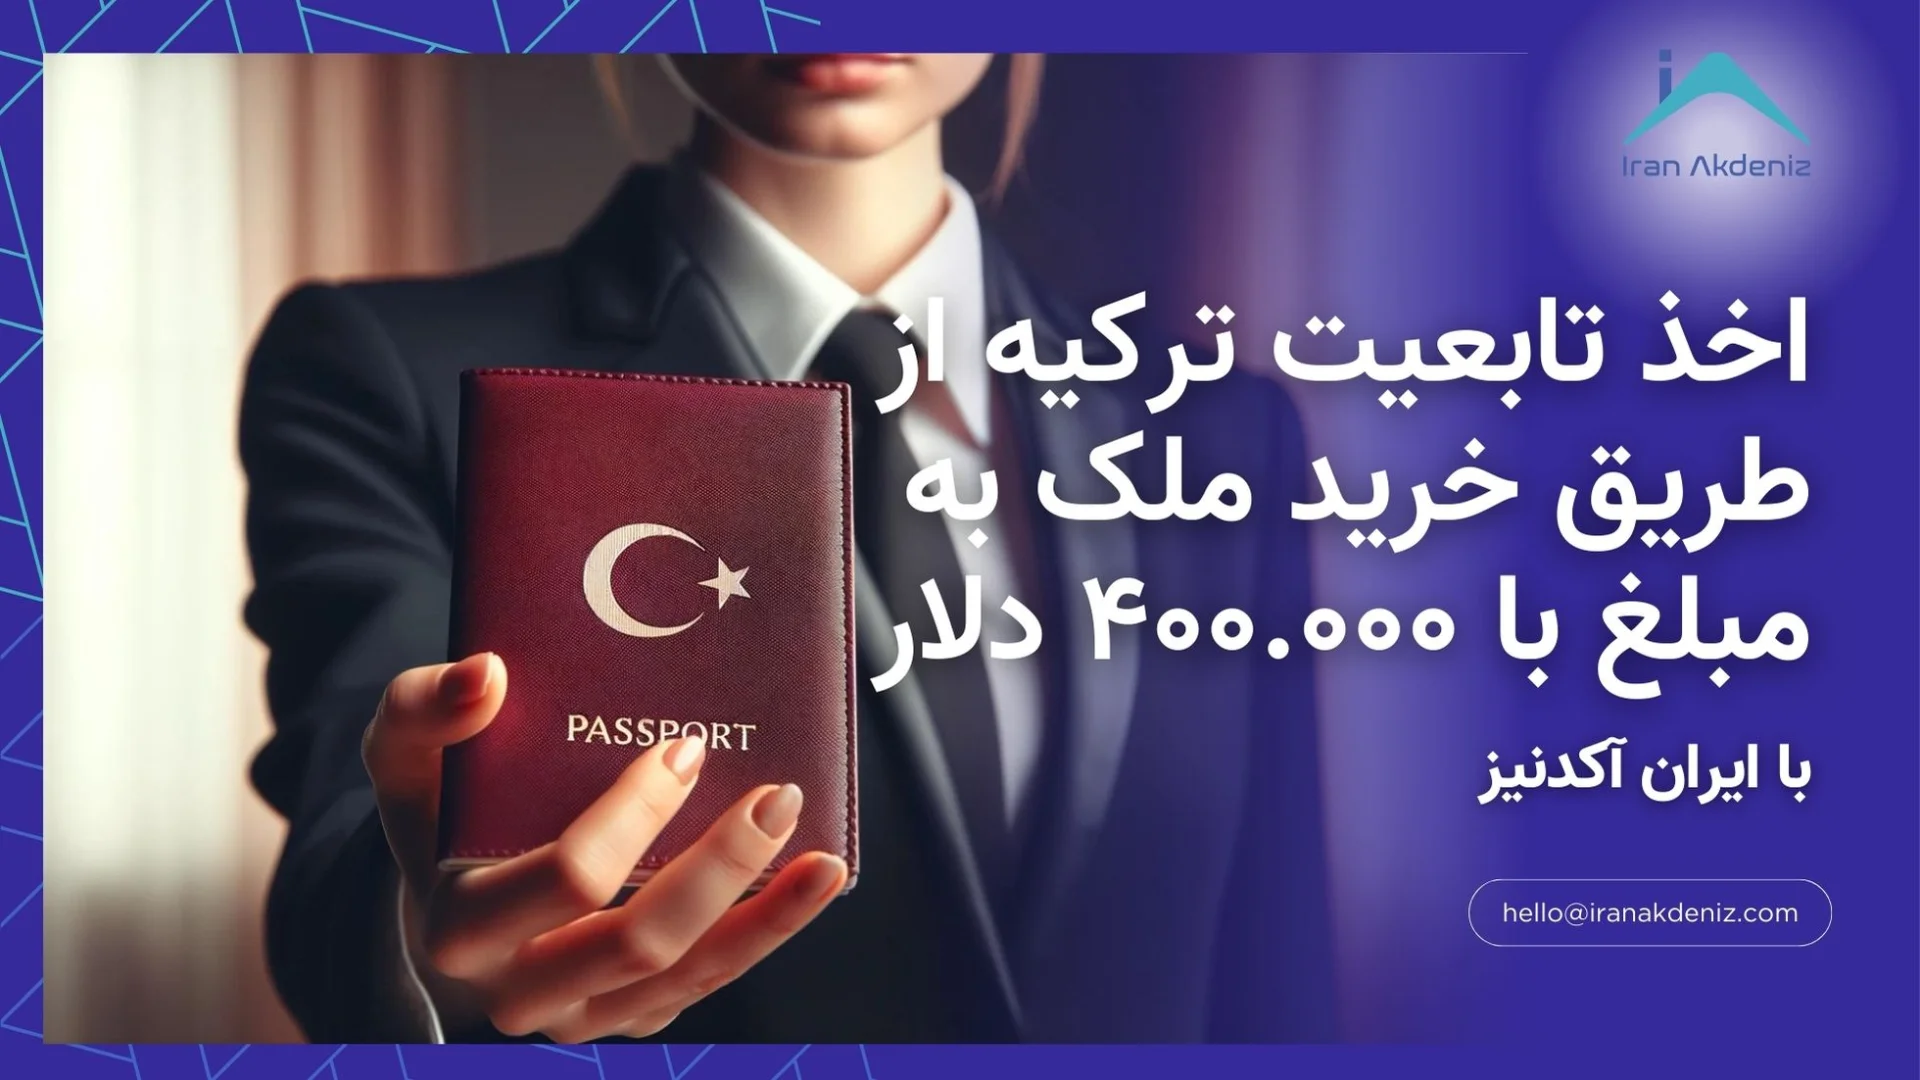 نحوه و مراحل اخذ تابعیت ترکیه از طریق خرید ملک به مبلغ با ۴۰۰.۰۰۰ دلار با کمک مشاورین ایران آکدنیز